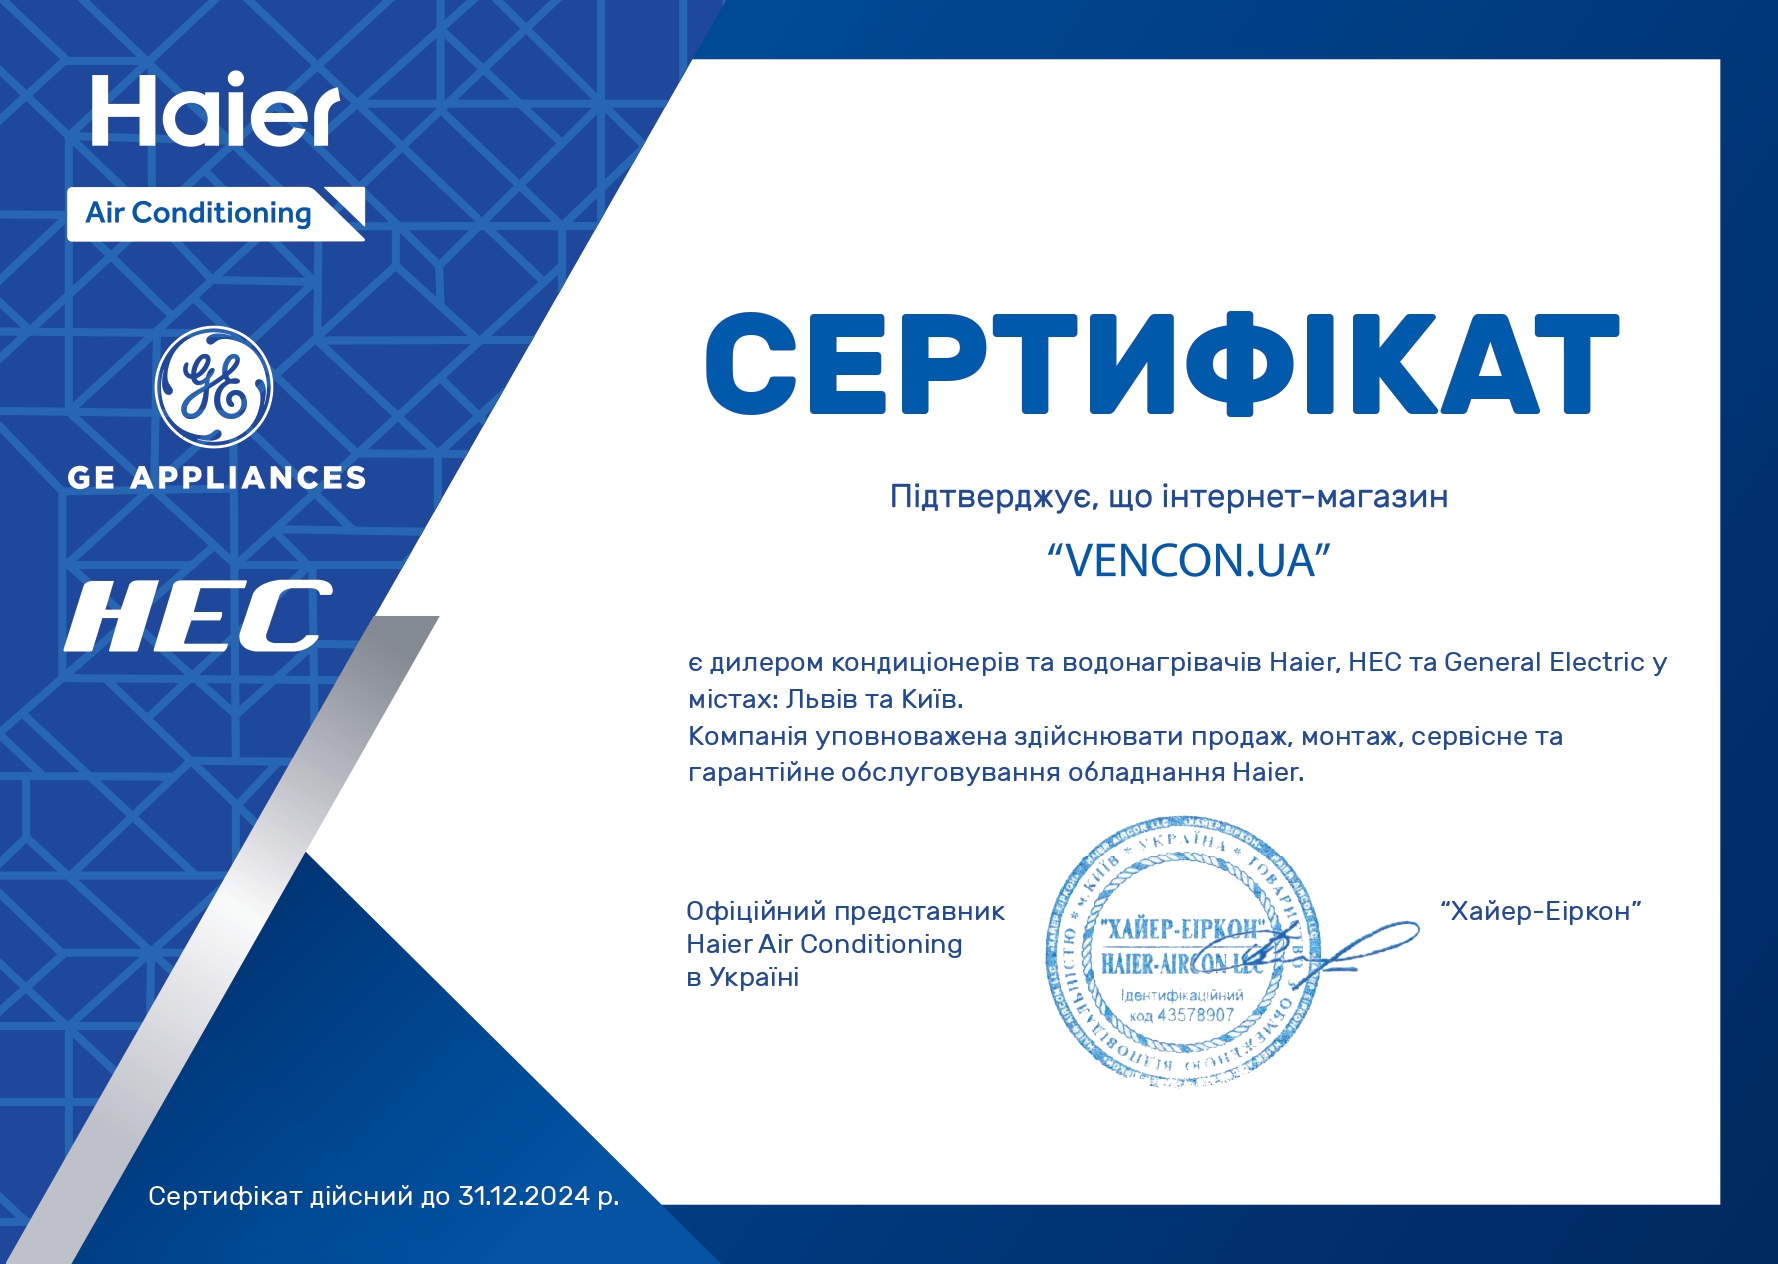 Кондиционеры General Electric в Николаеве - сертификат официального продавца General Electric